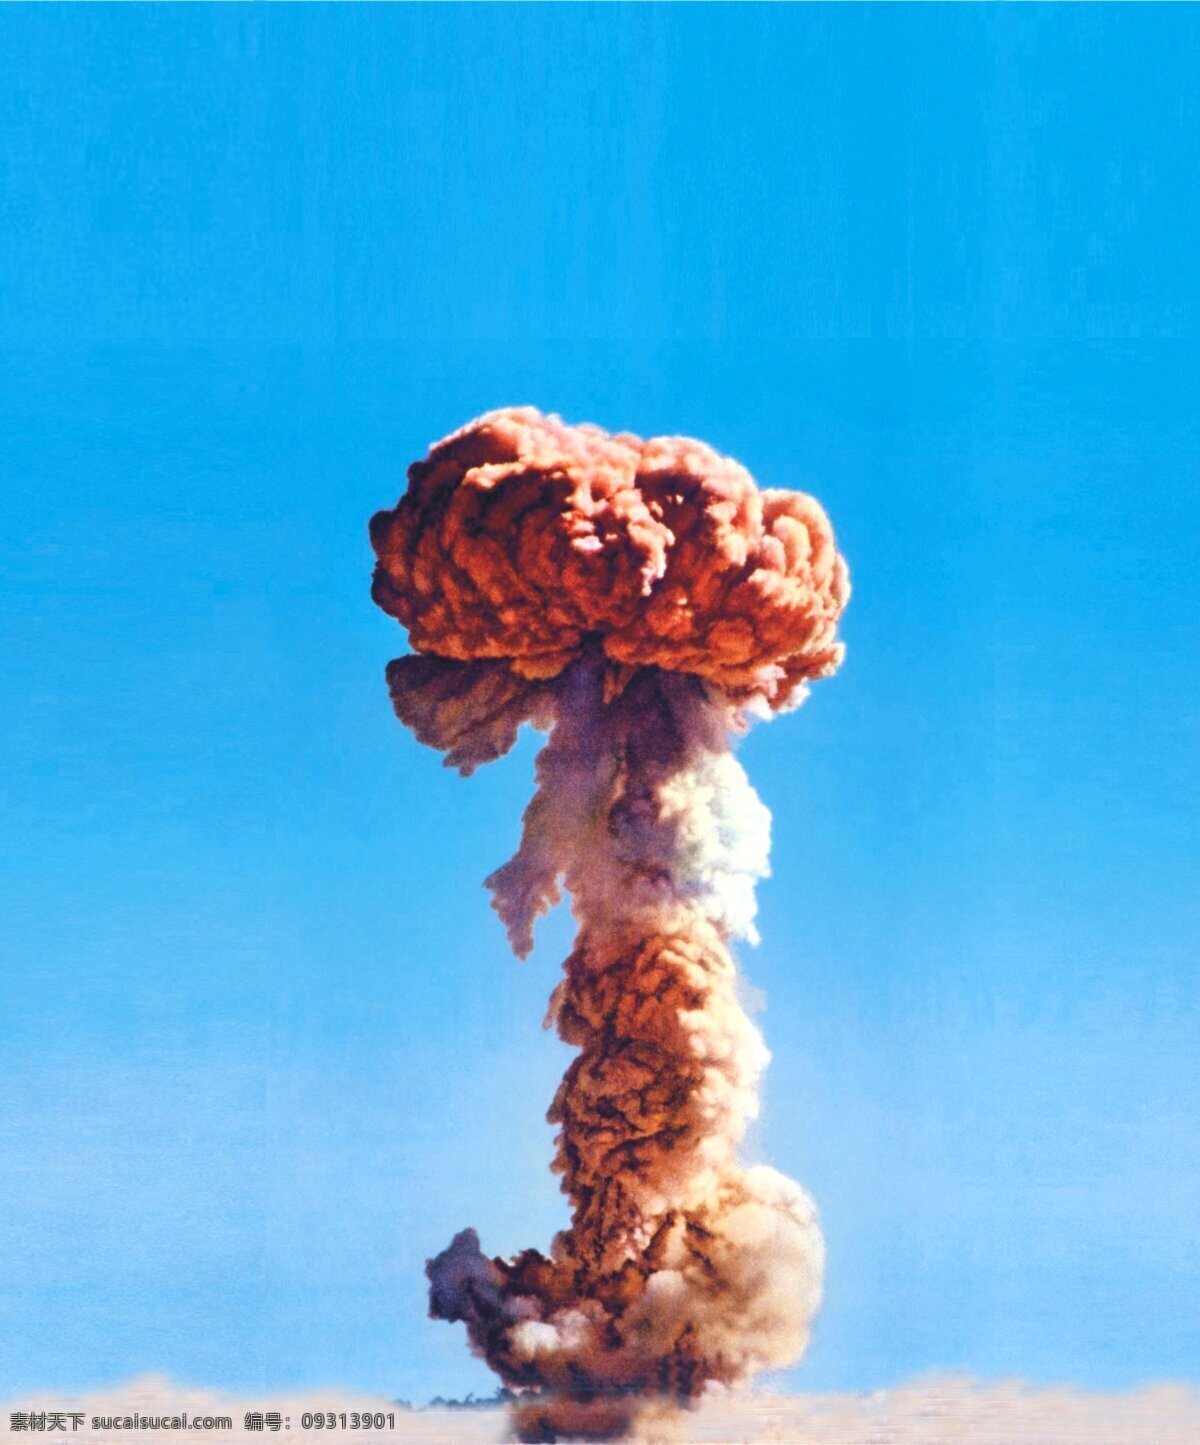 核弹 爆炸 蘑菇云 核弹爆炸 爆炸场景 核导弹 氢弹 核武器 核爆炸 核试验 原子弹试验 氢弹爆炸 原子弹爆炸 现代科技 科学研究